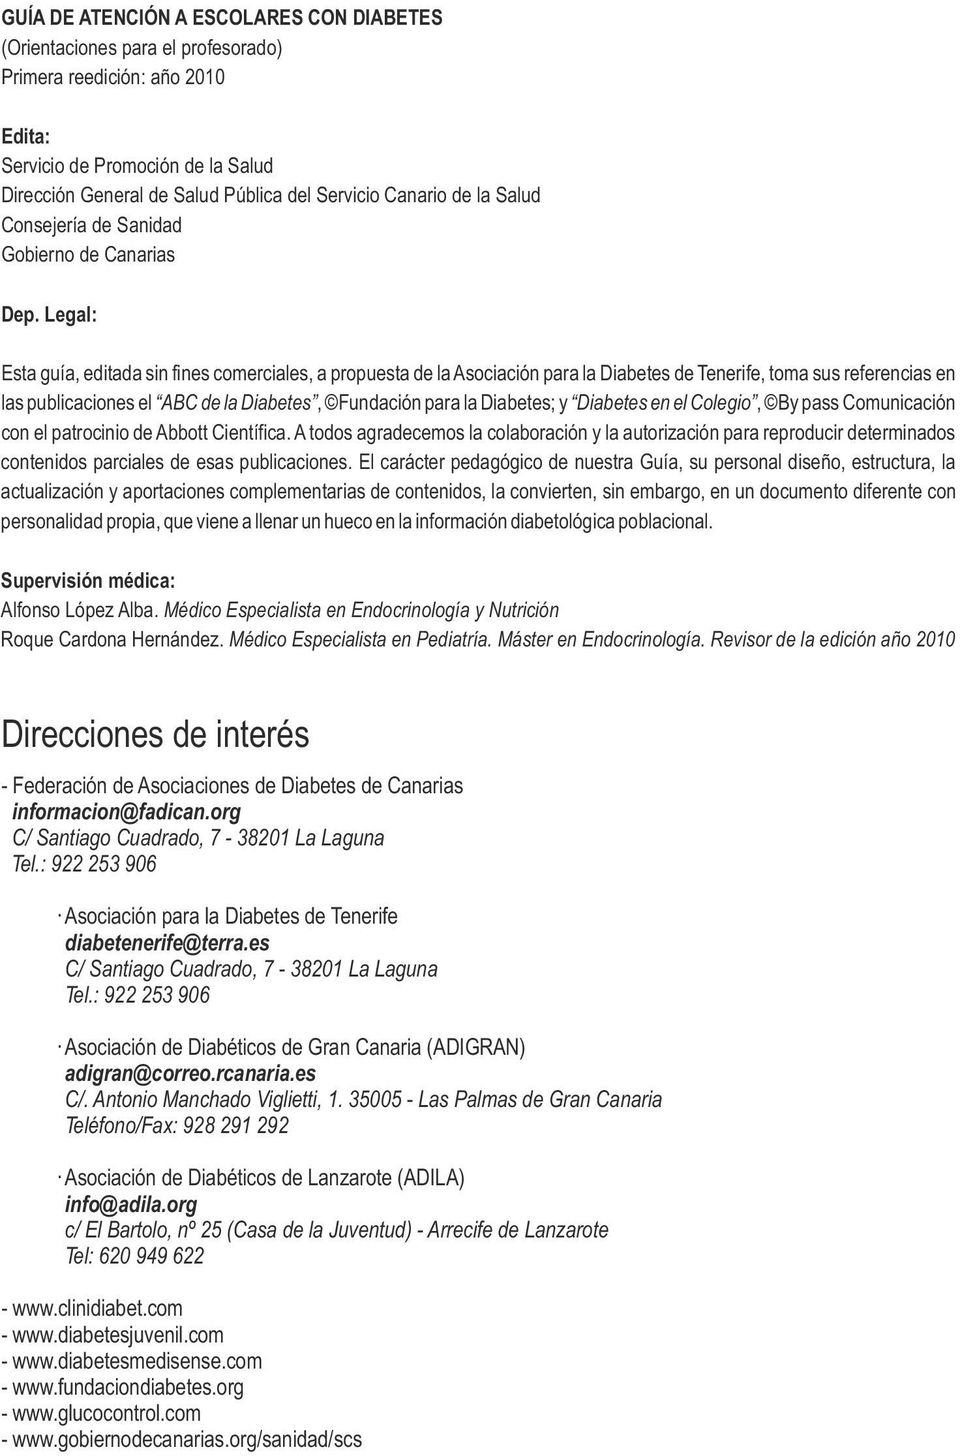 Legal: Esta guía, editada sin fines comerciales, a propuesta de la Asociación para la Diabetes de Tenerife, toma sus referencias en las publicaciones el ABC de la Diabetes, Fundación para la